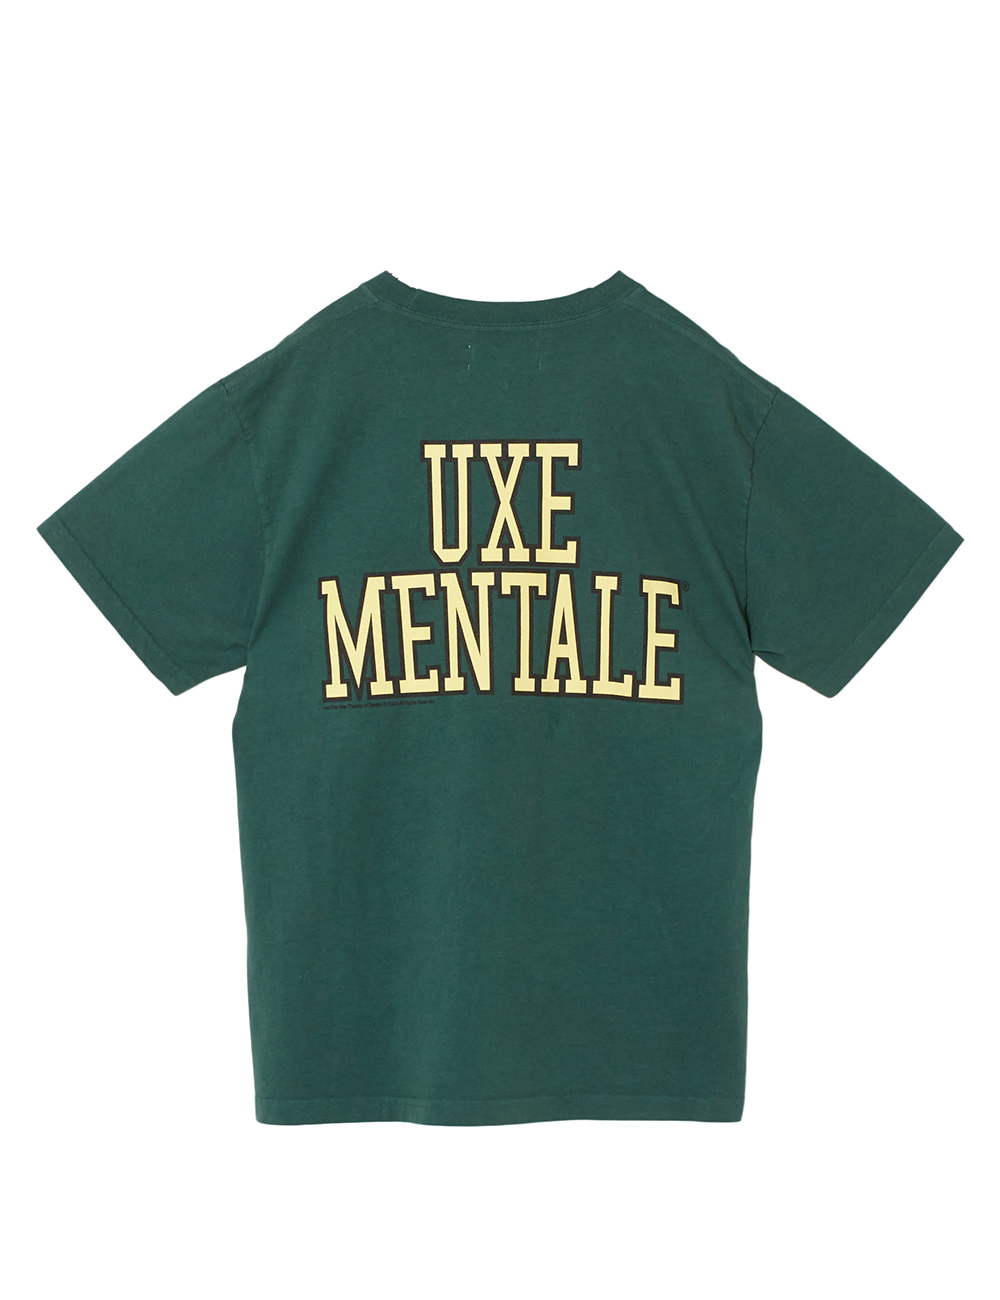 【MEN】UXE MENTALE Tシャツ 詳細画像 ディープグリーン 2